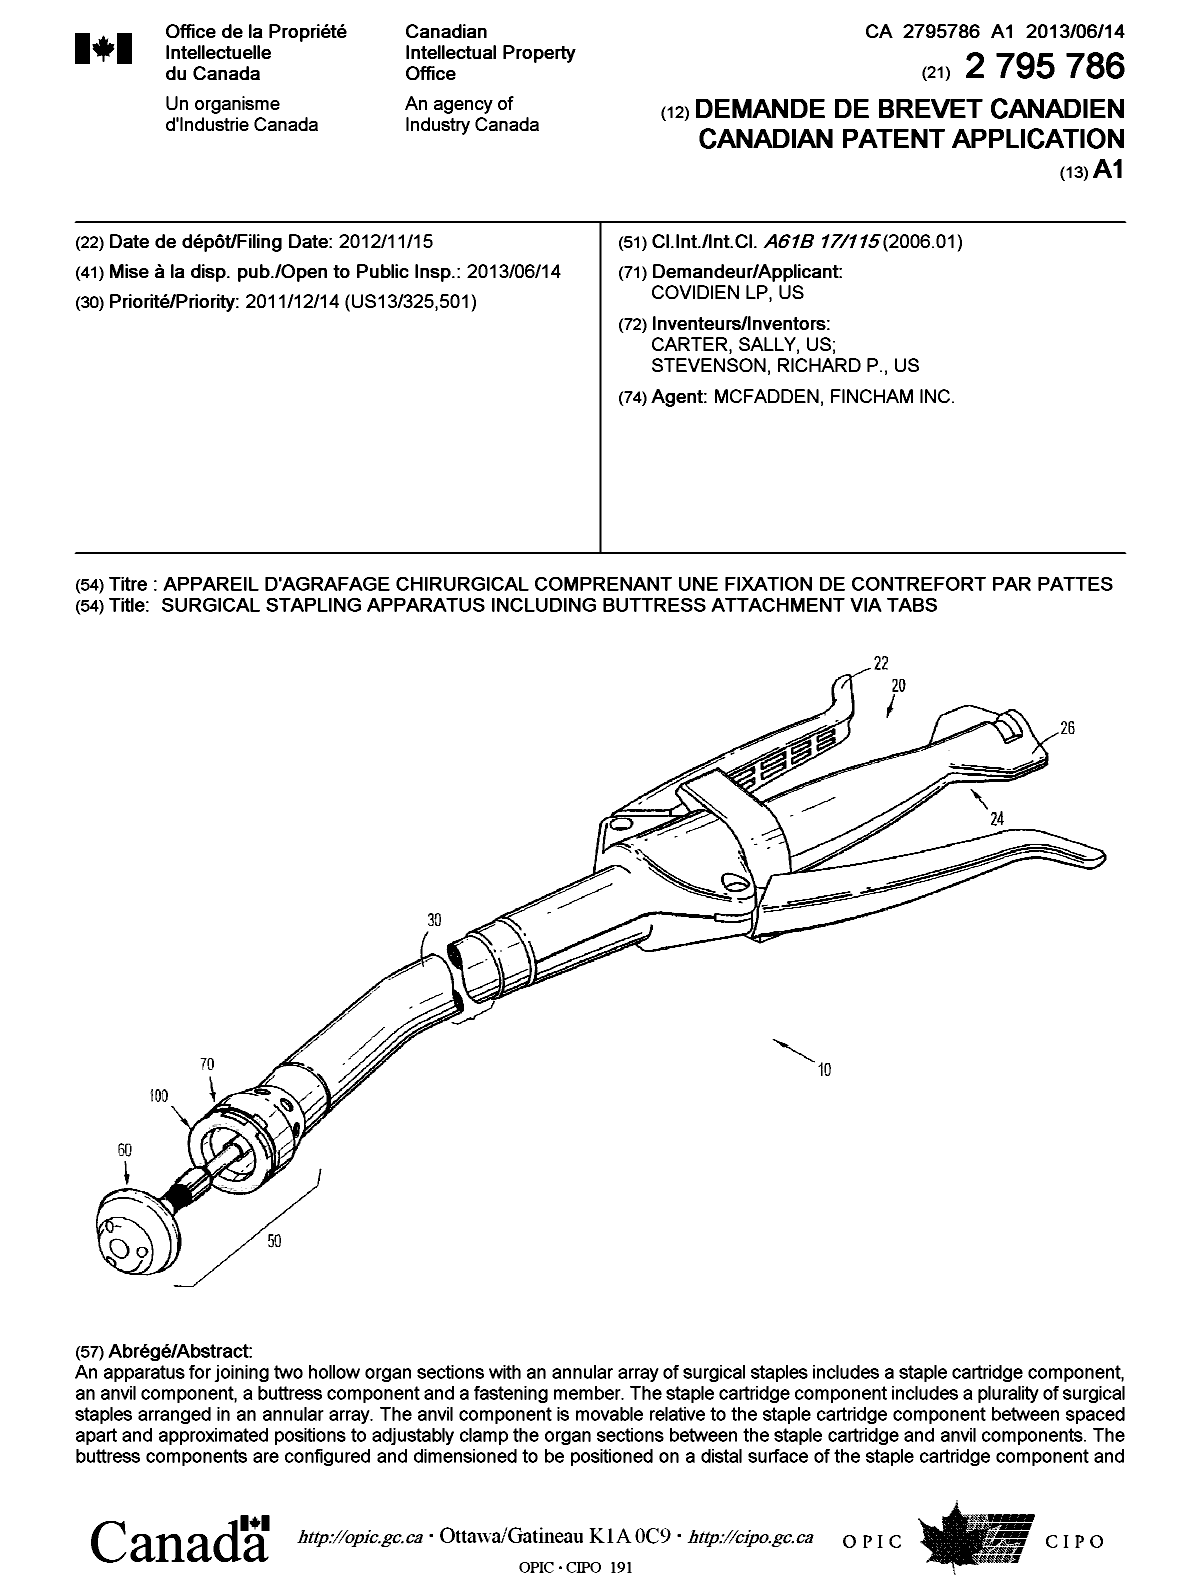 Document de brevet canadien 2795786. Page couverture 20130621. Image 1 de 2